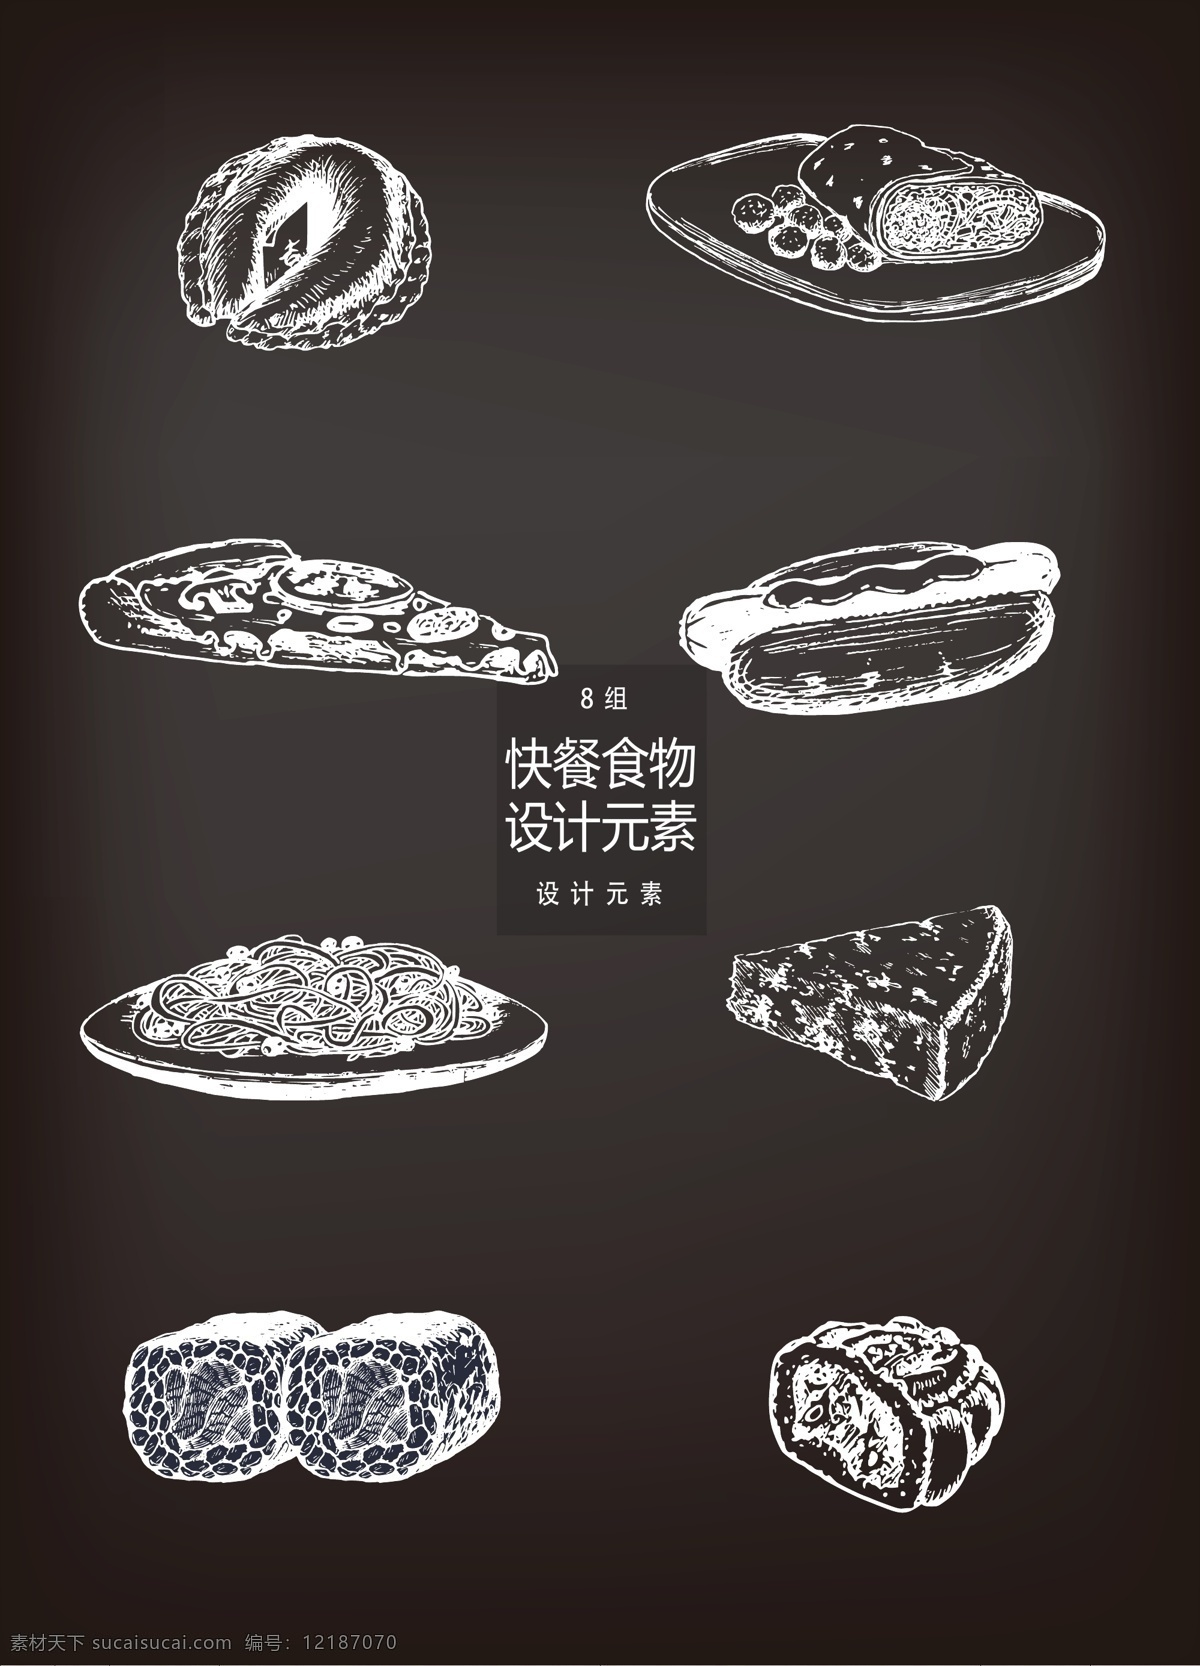 快餐 食物 手绘 插画 元素 手绘插画 面包 披萨 寿司 面条 设计元素 快餐食物 快餐美食 热狗 芝士 意大利面